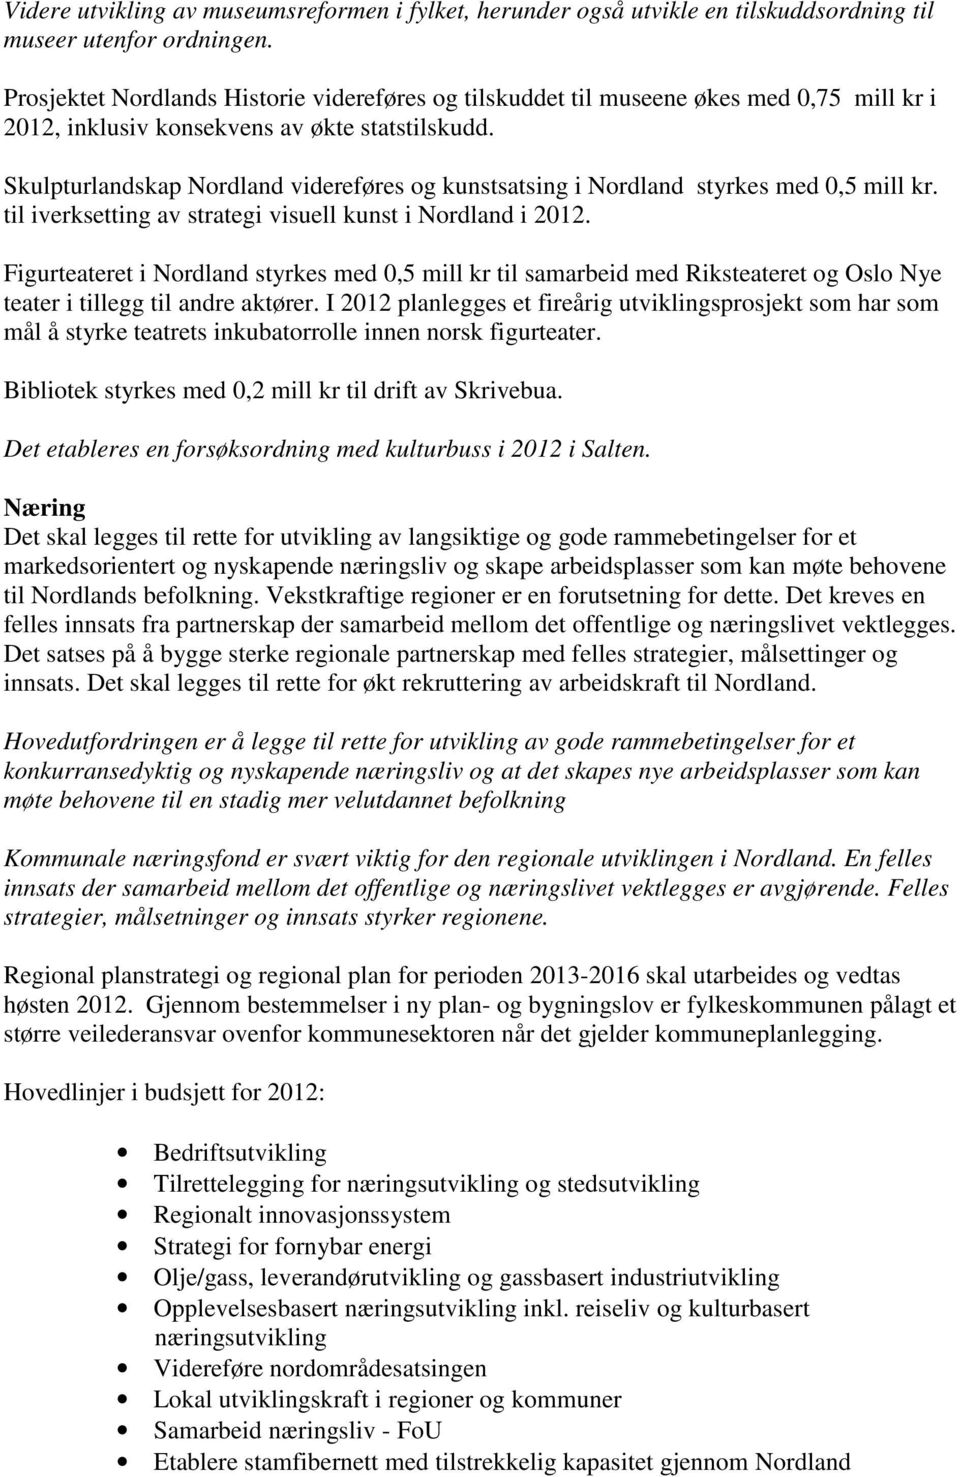 Skulpturlandskap Nordland videreføres og kunstsatsing i Nordland styrkes med 0,5 mill kr. til iverksetting av strategi visuell kunst i Nordland i 2012.